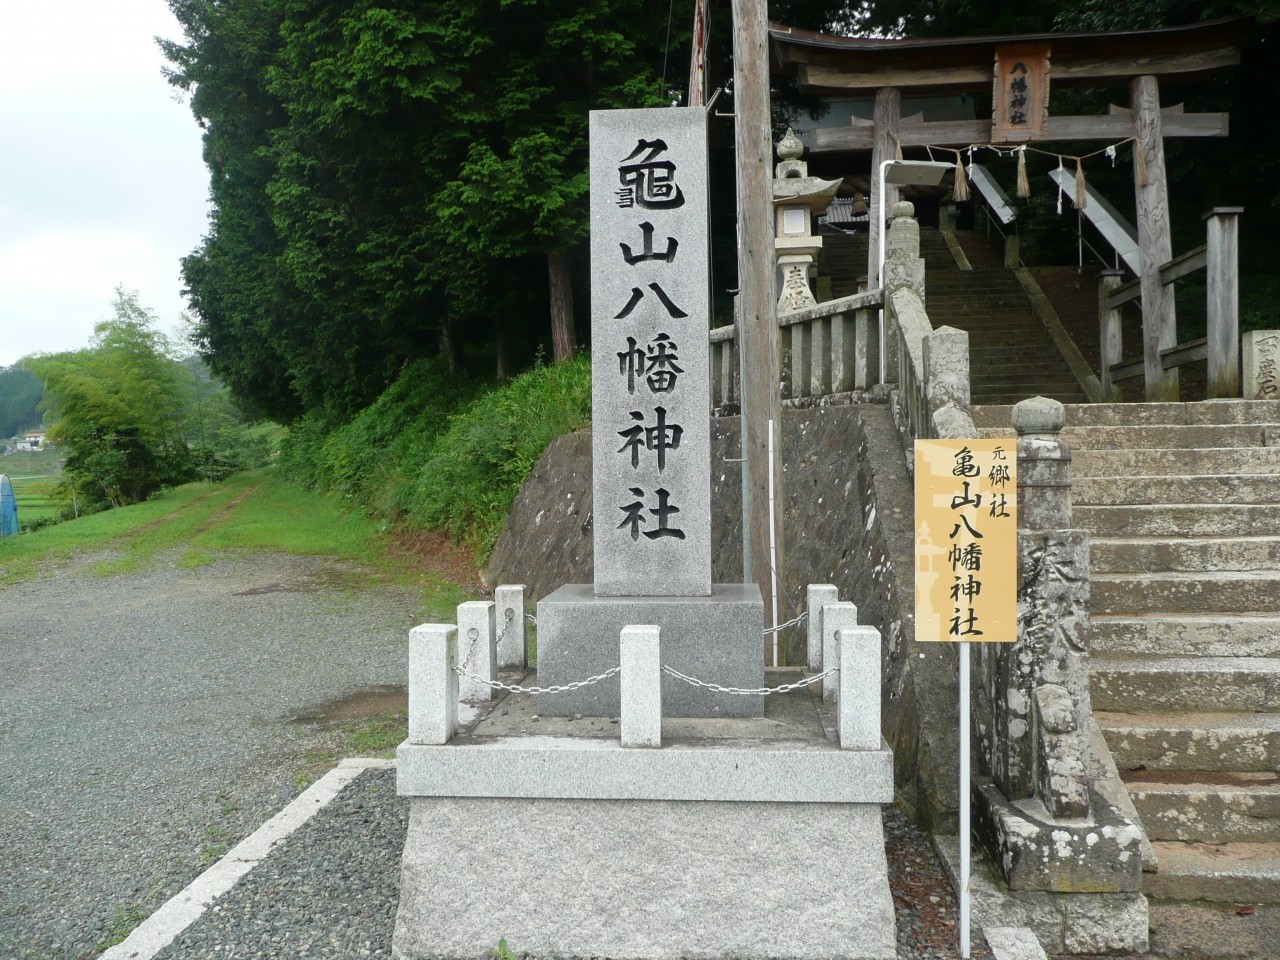 入り口にある神社名碑です